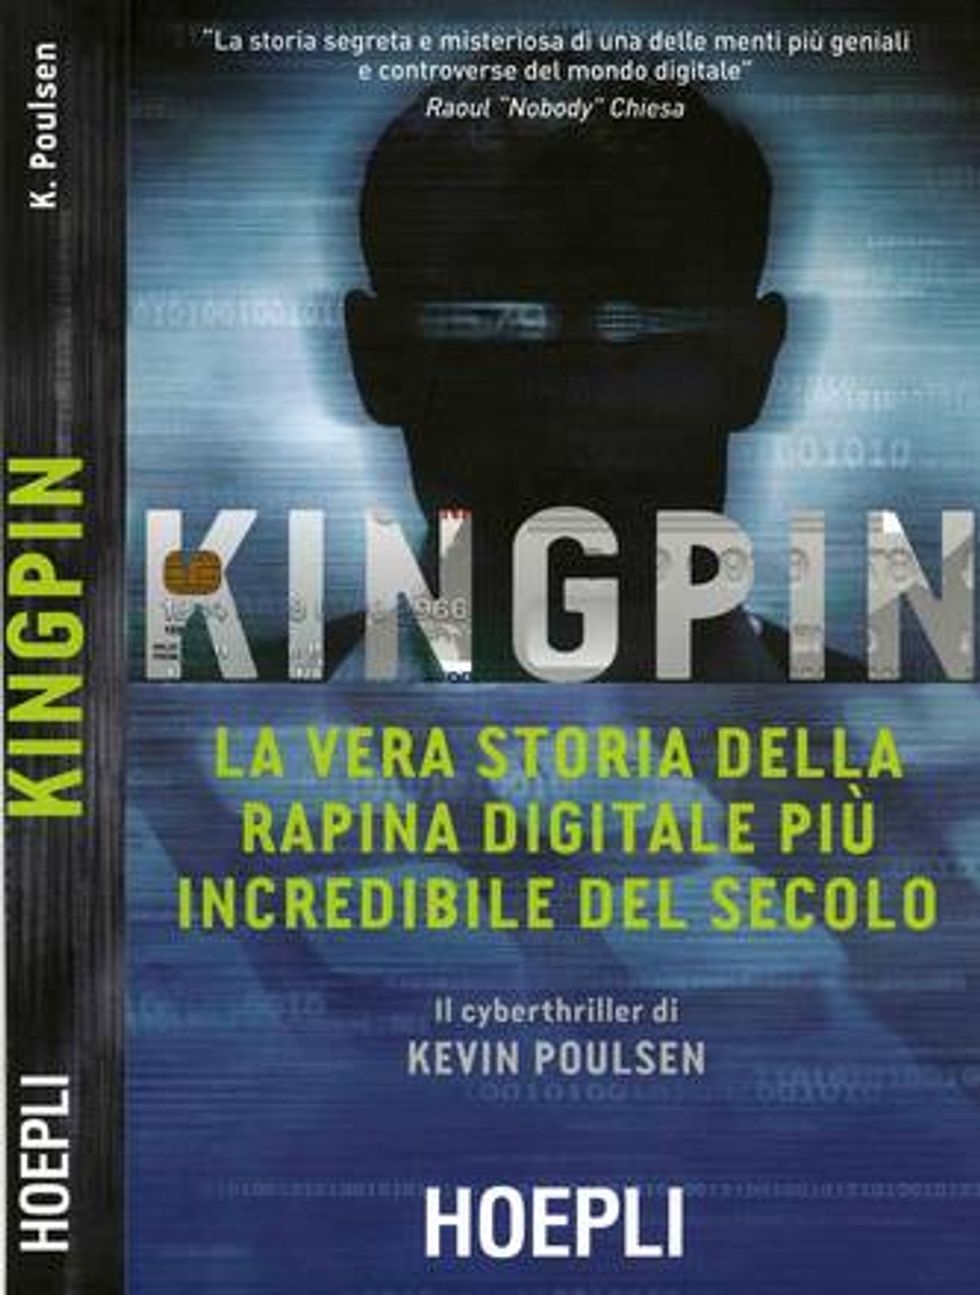 Kingpin di Kevin Poulsen per Hoepli